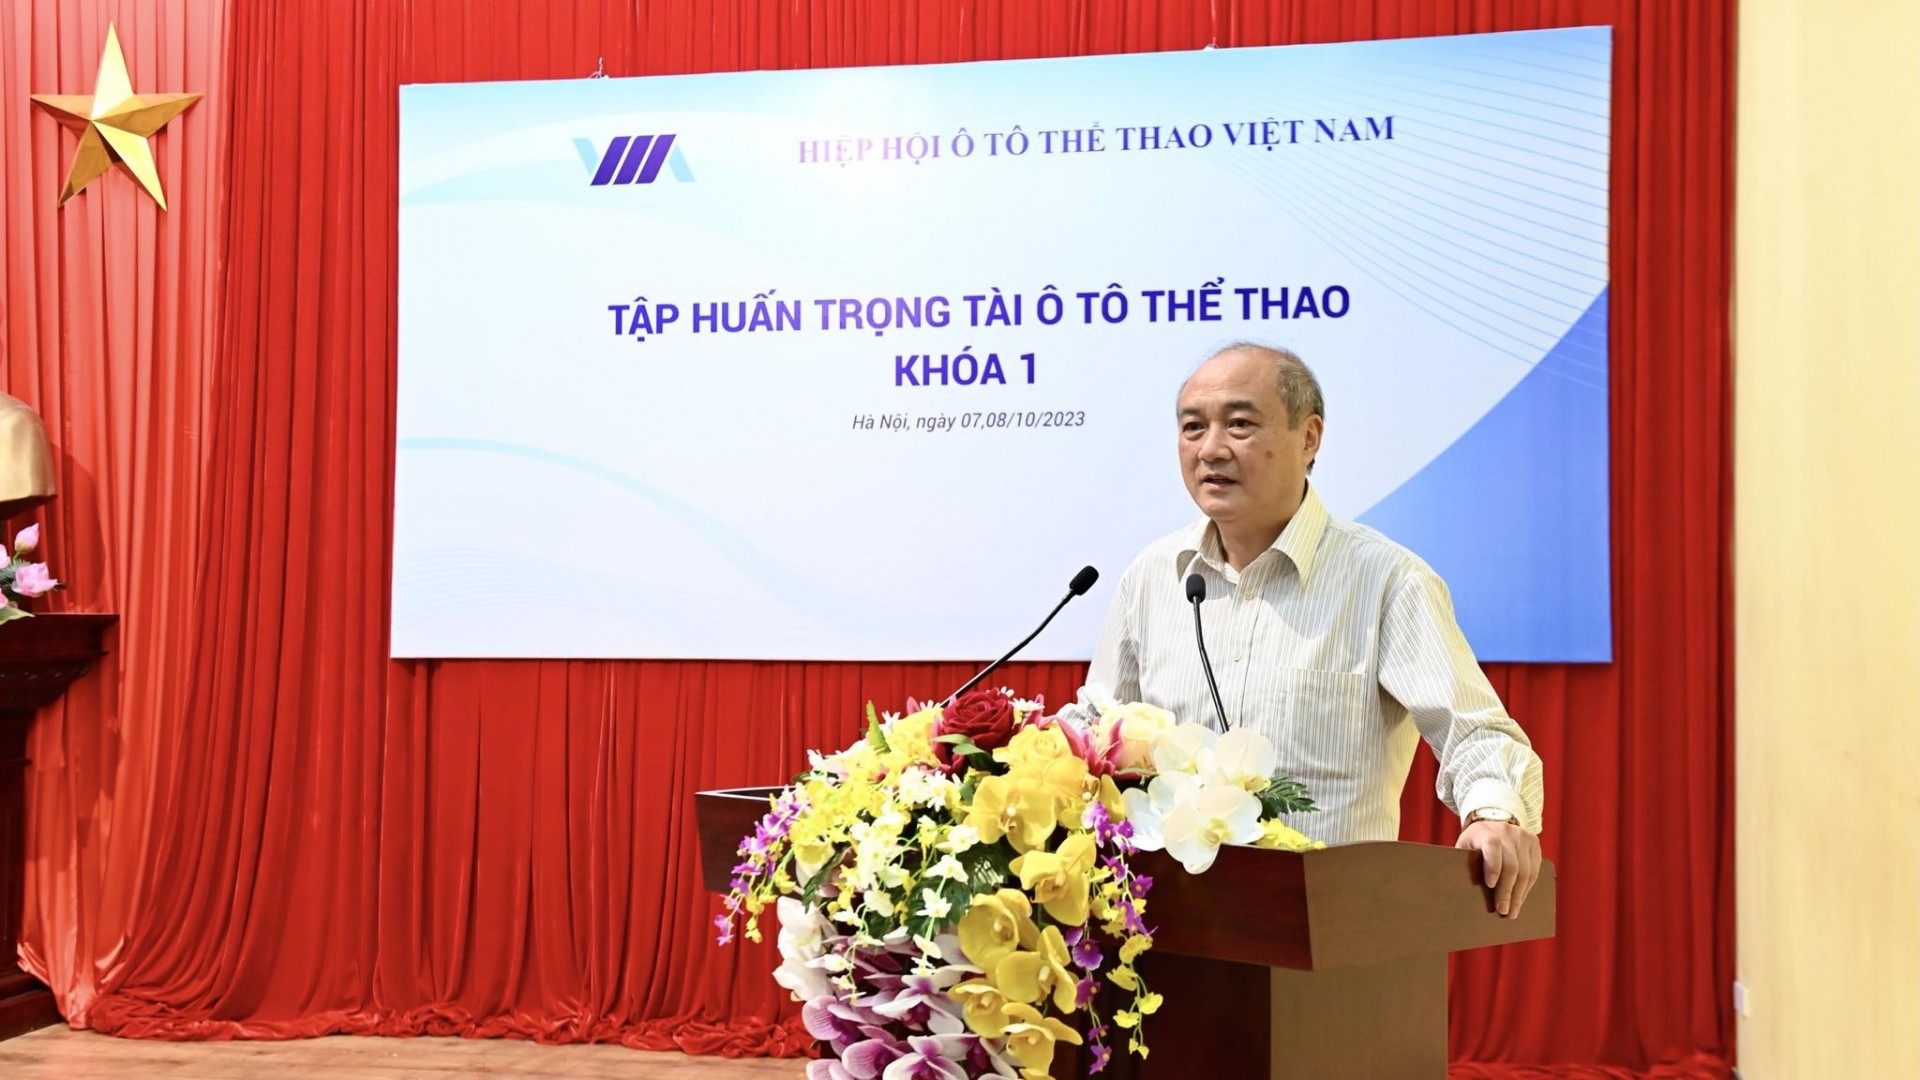 Tổ chức thành công khoá tập huấn trọng tài ô tô thể thao đầu tiên tại Việt Nam